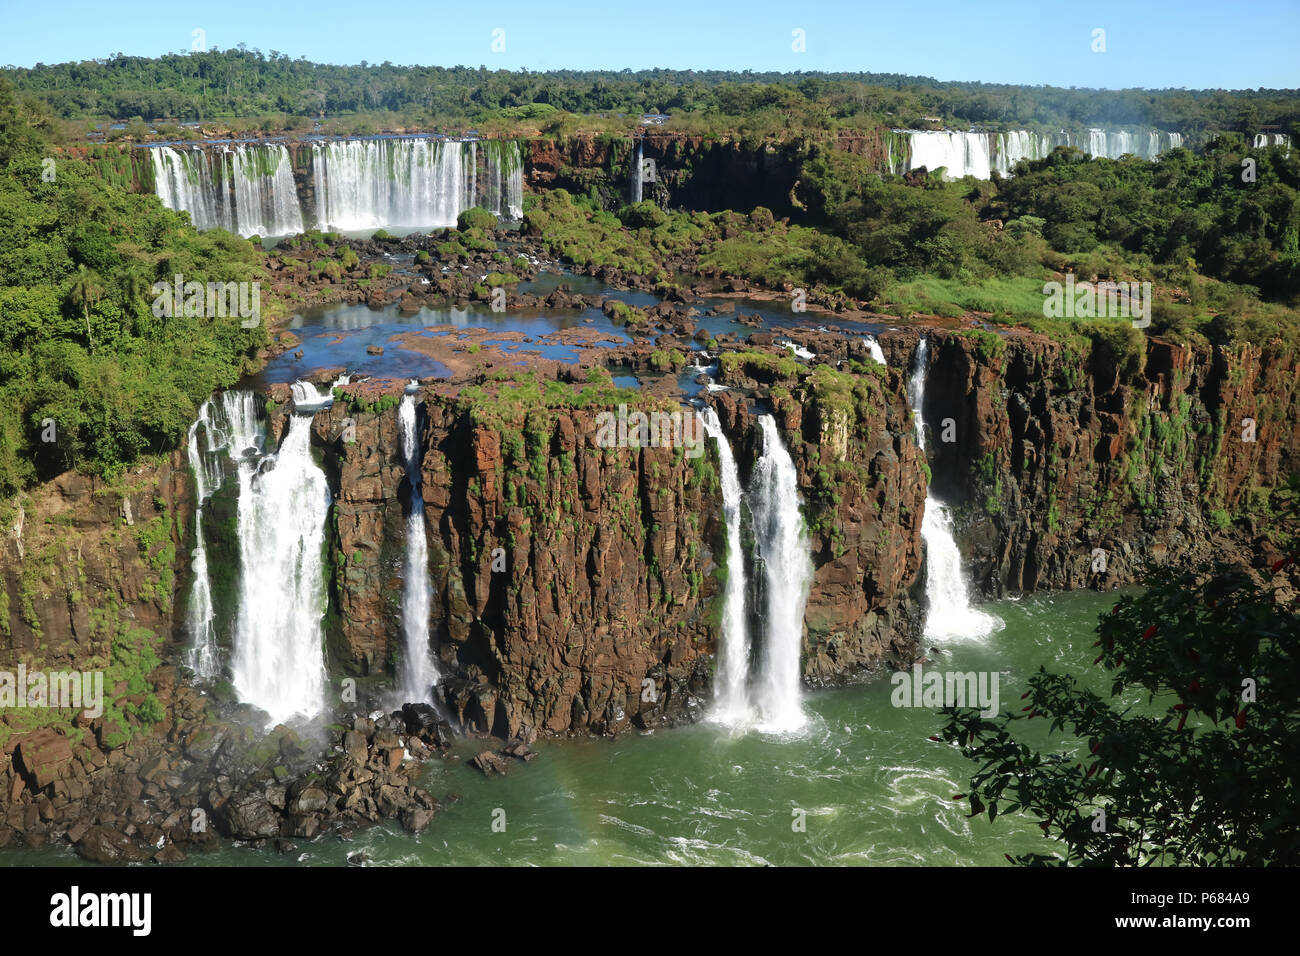 Iguazu falls from the Brazilian side, Foz do Iguacu, Brazil Stock Photo